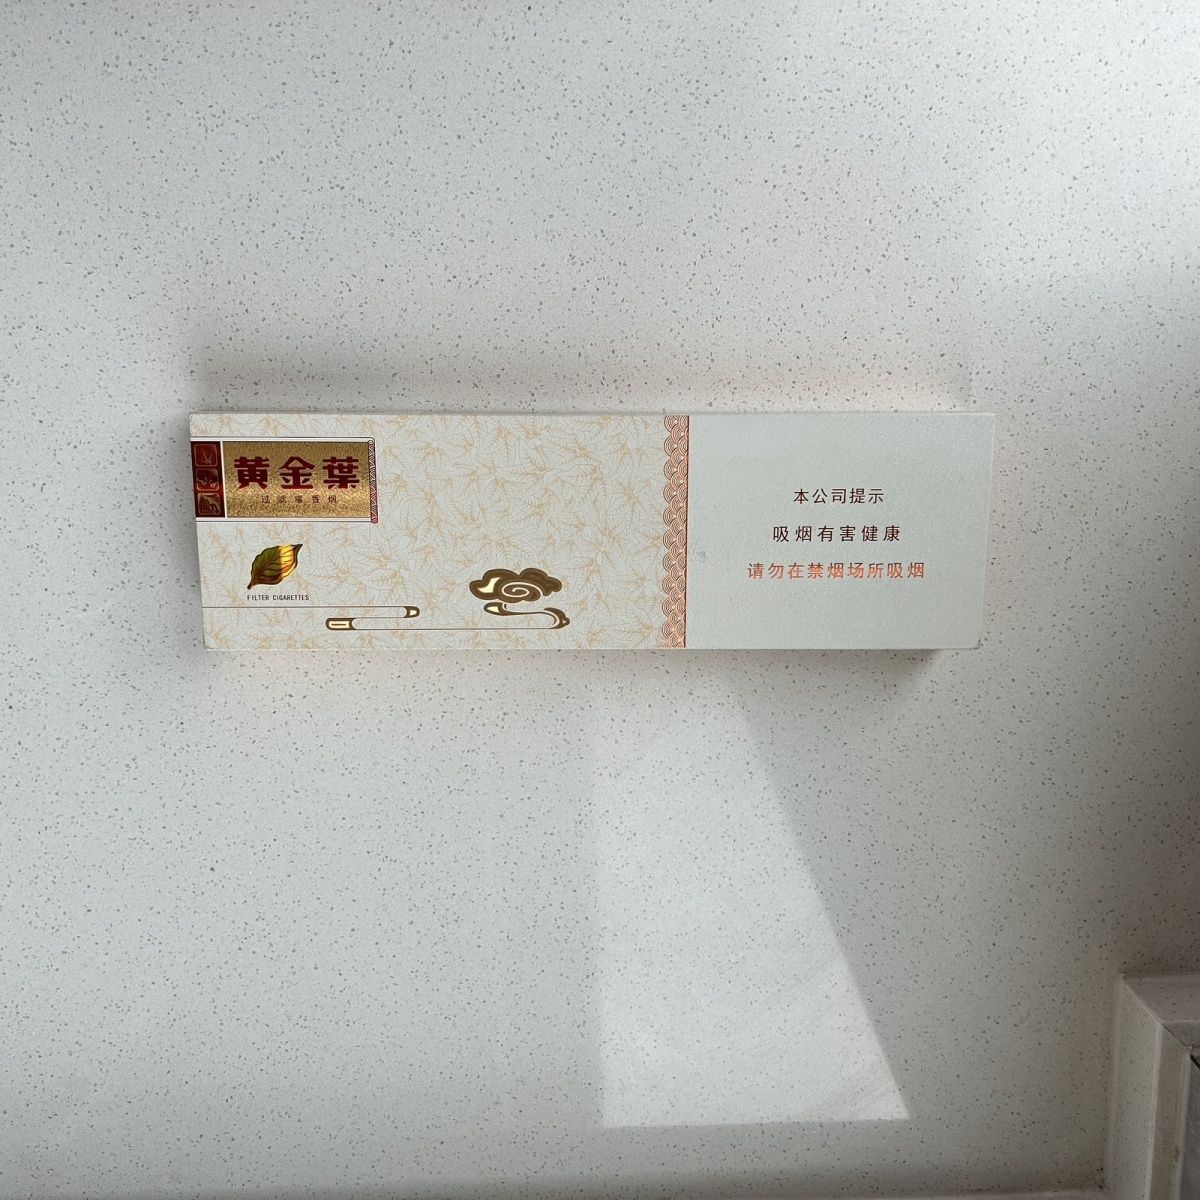 高档烟盒磁吸翻盖金陵十二钗空盒长条家用便宜收纳盒高颜值中华盒